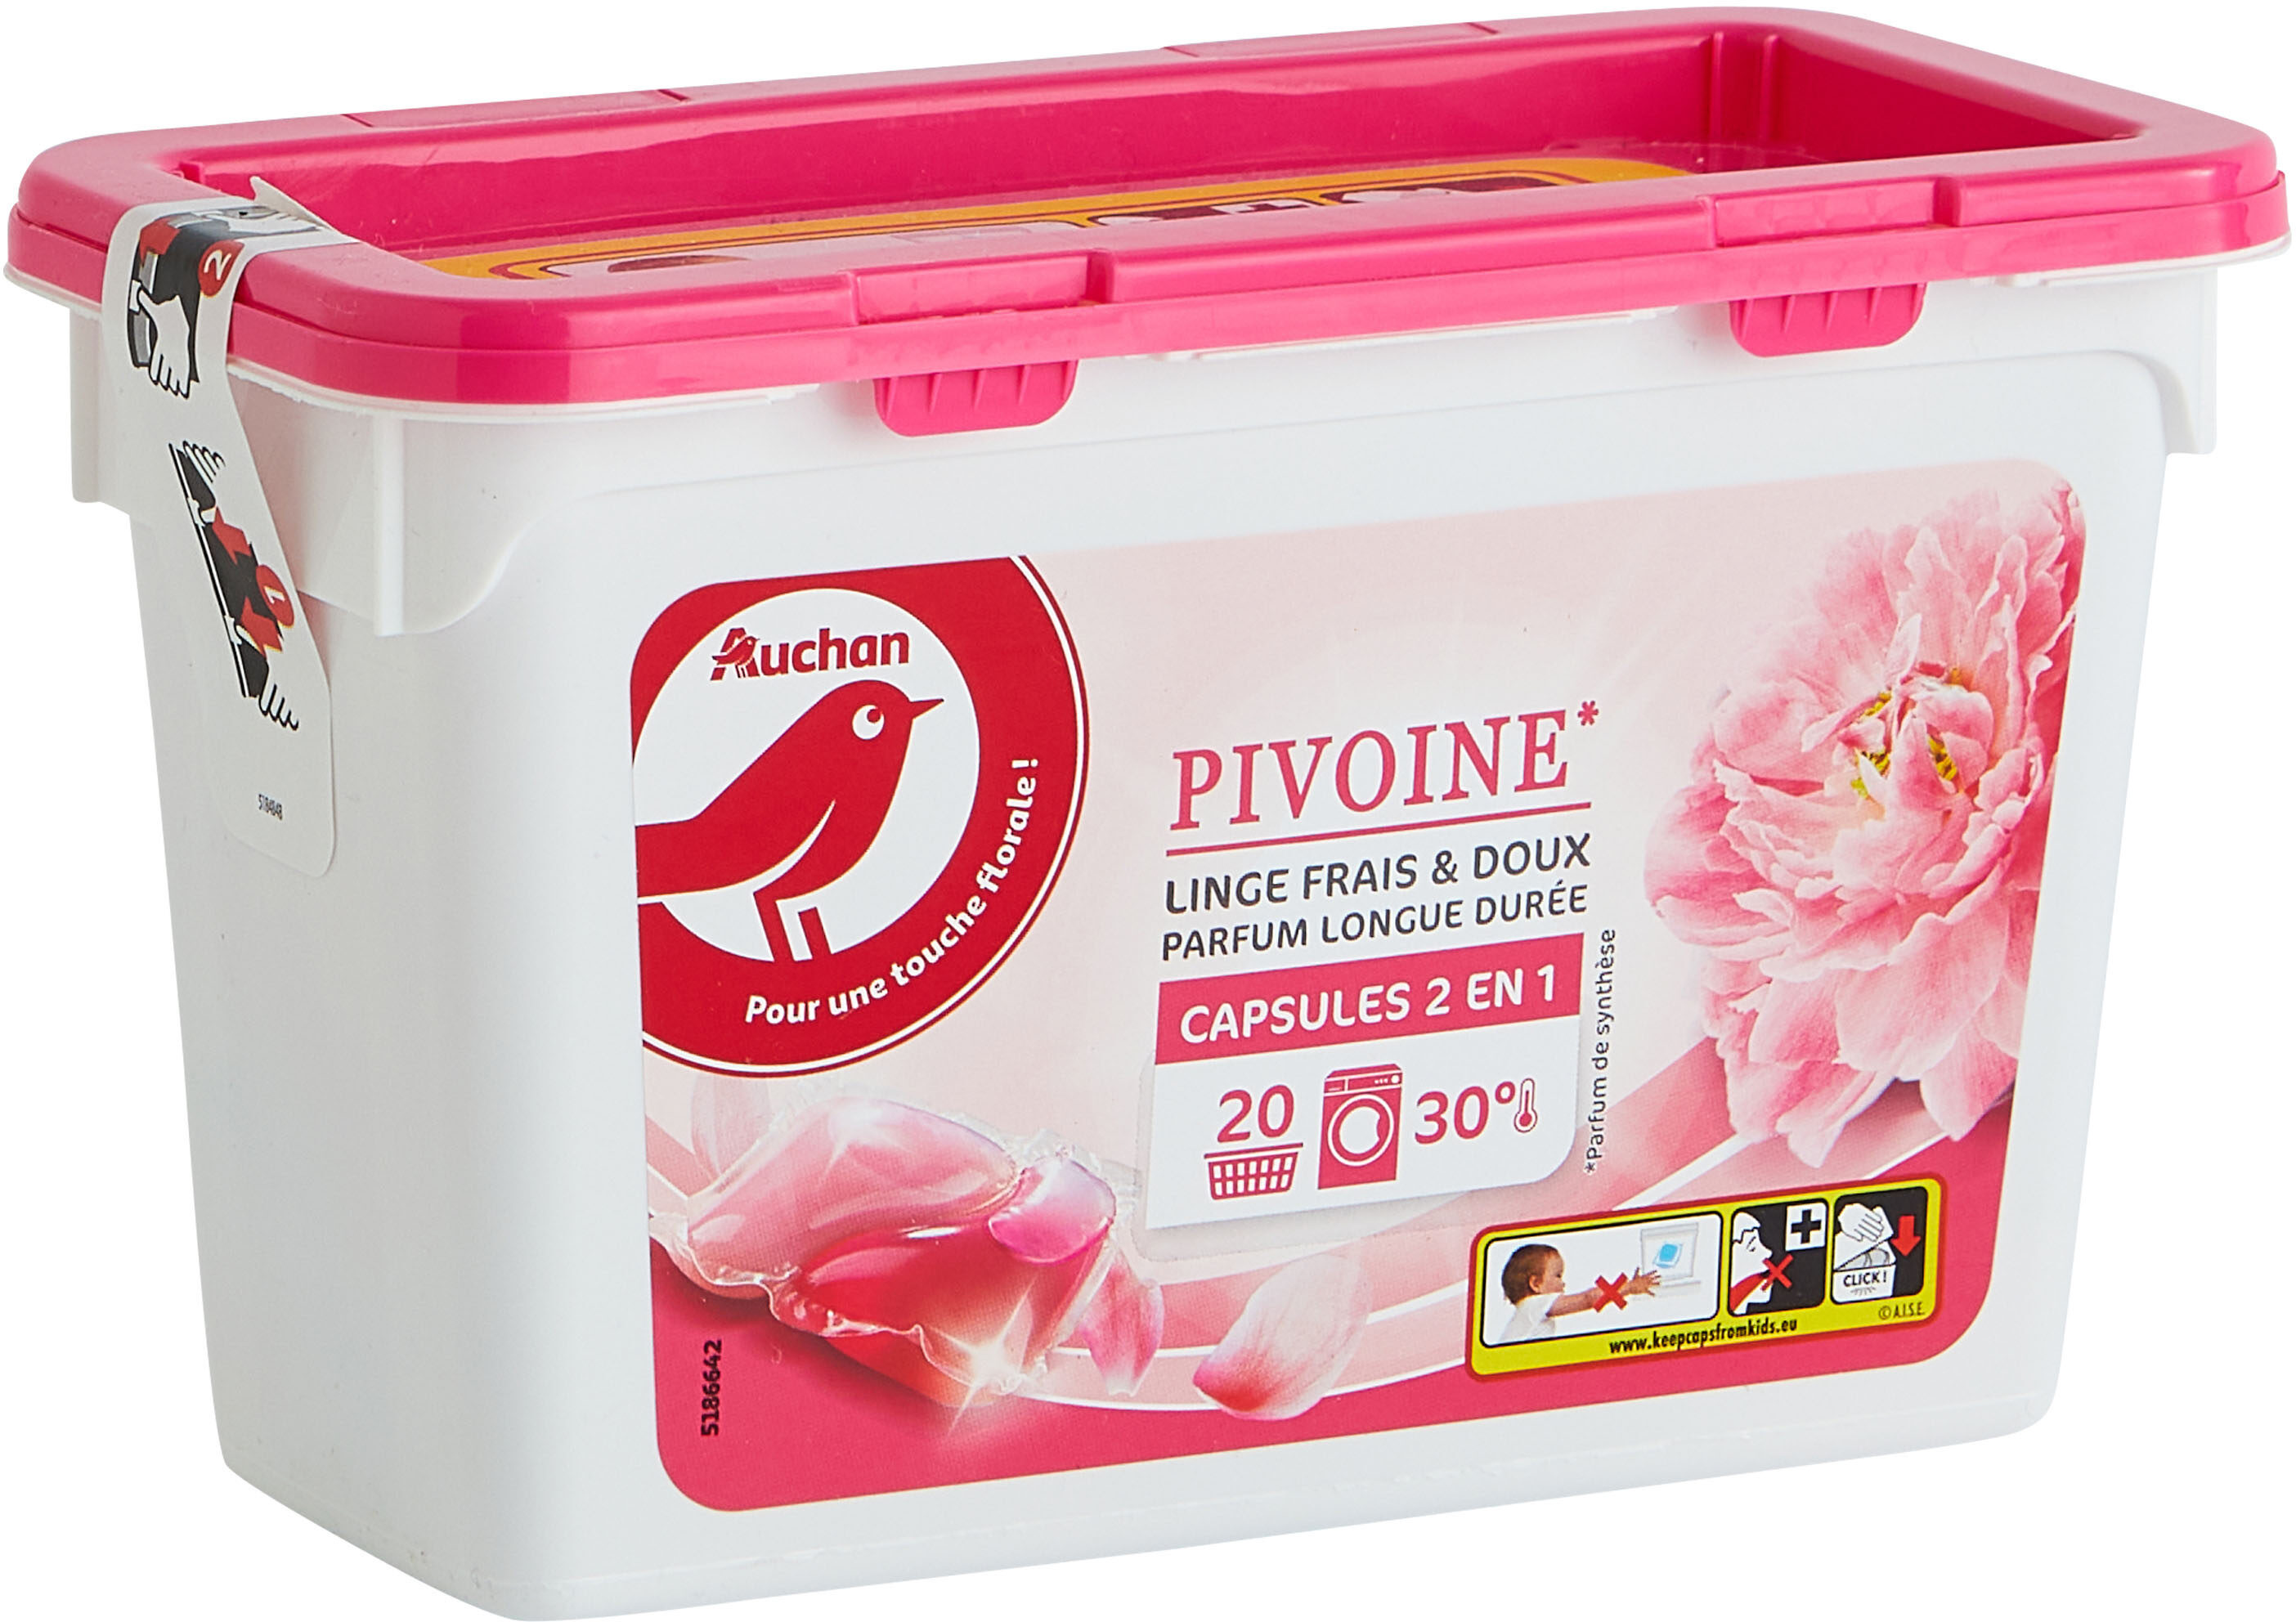 Auch lessive caps floral pivoine 20pcs - Produit - fr